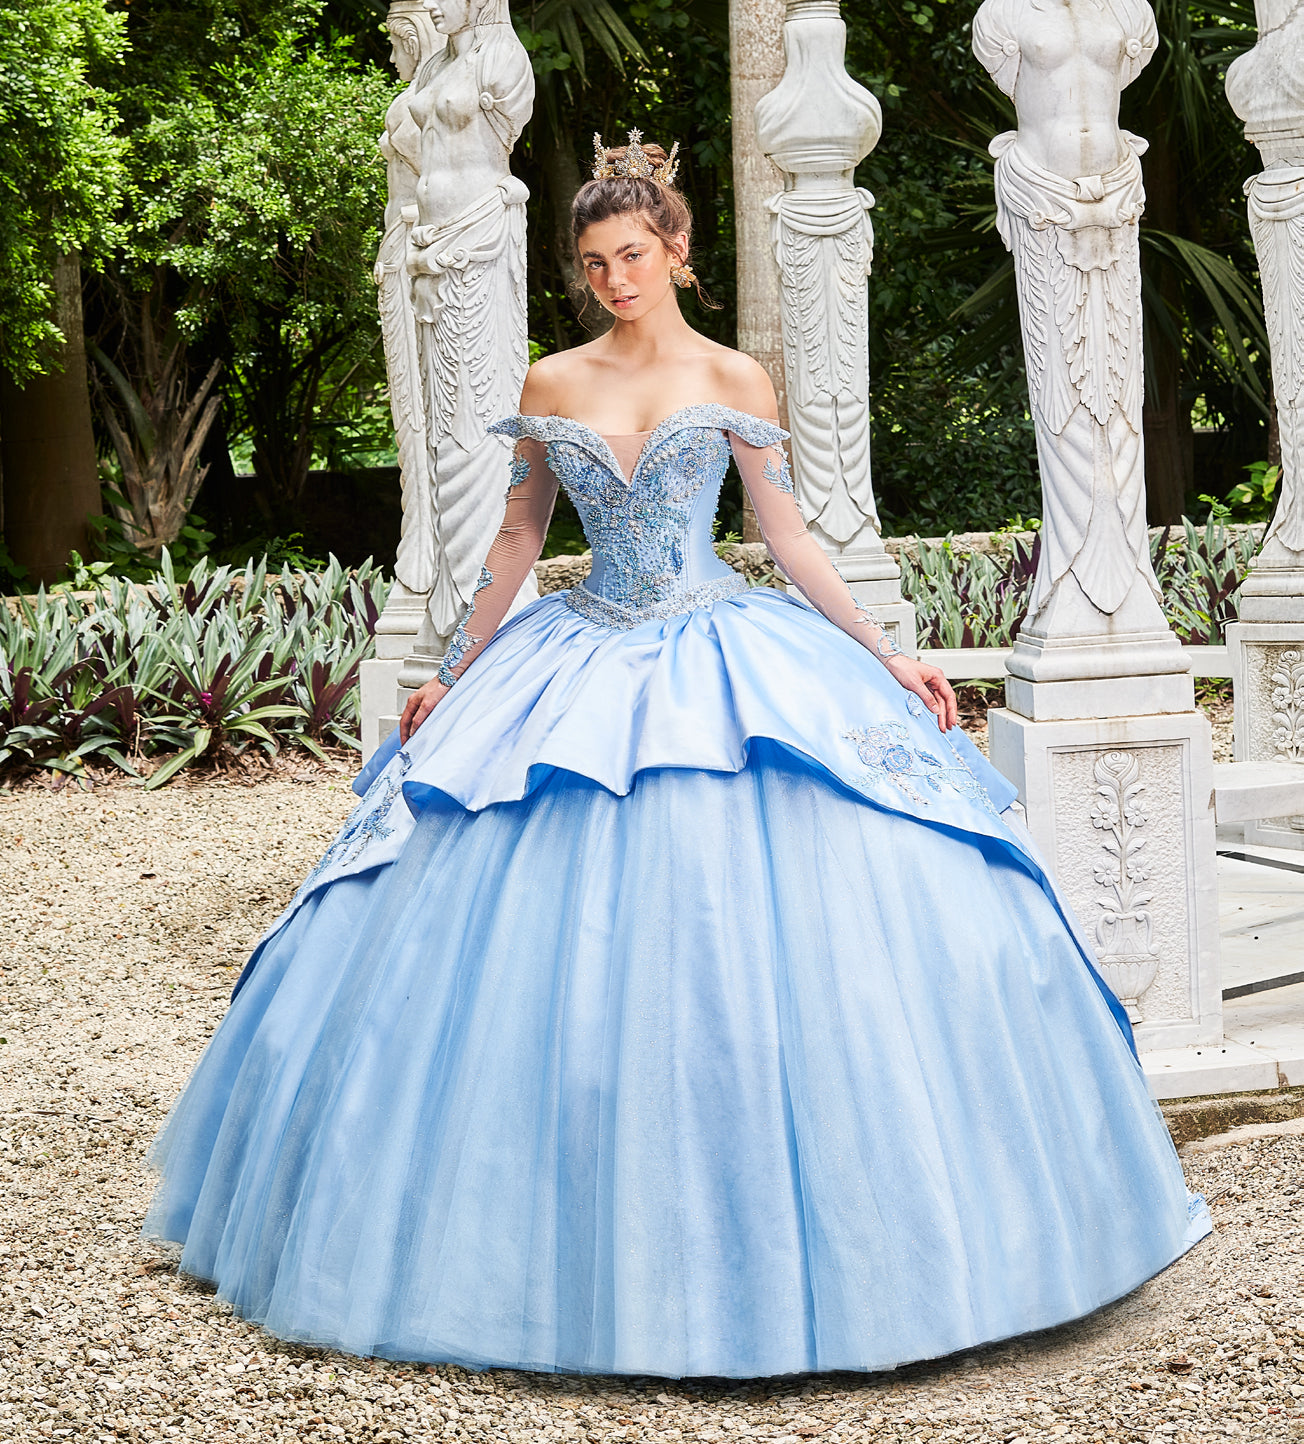 miércoles Tío o señor frío Vestido Princesa Aurora de Disney – Vestidos de XV